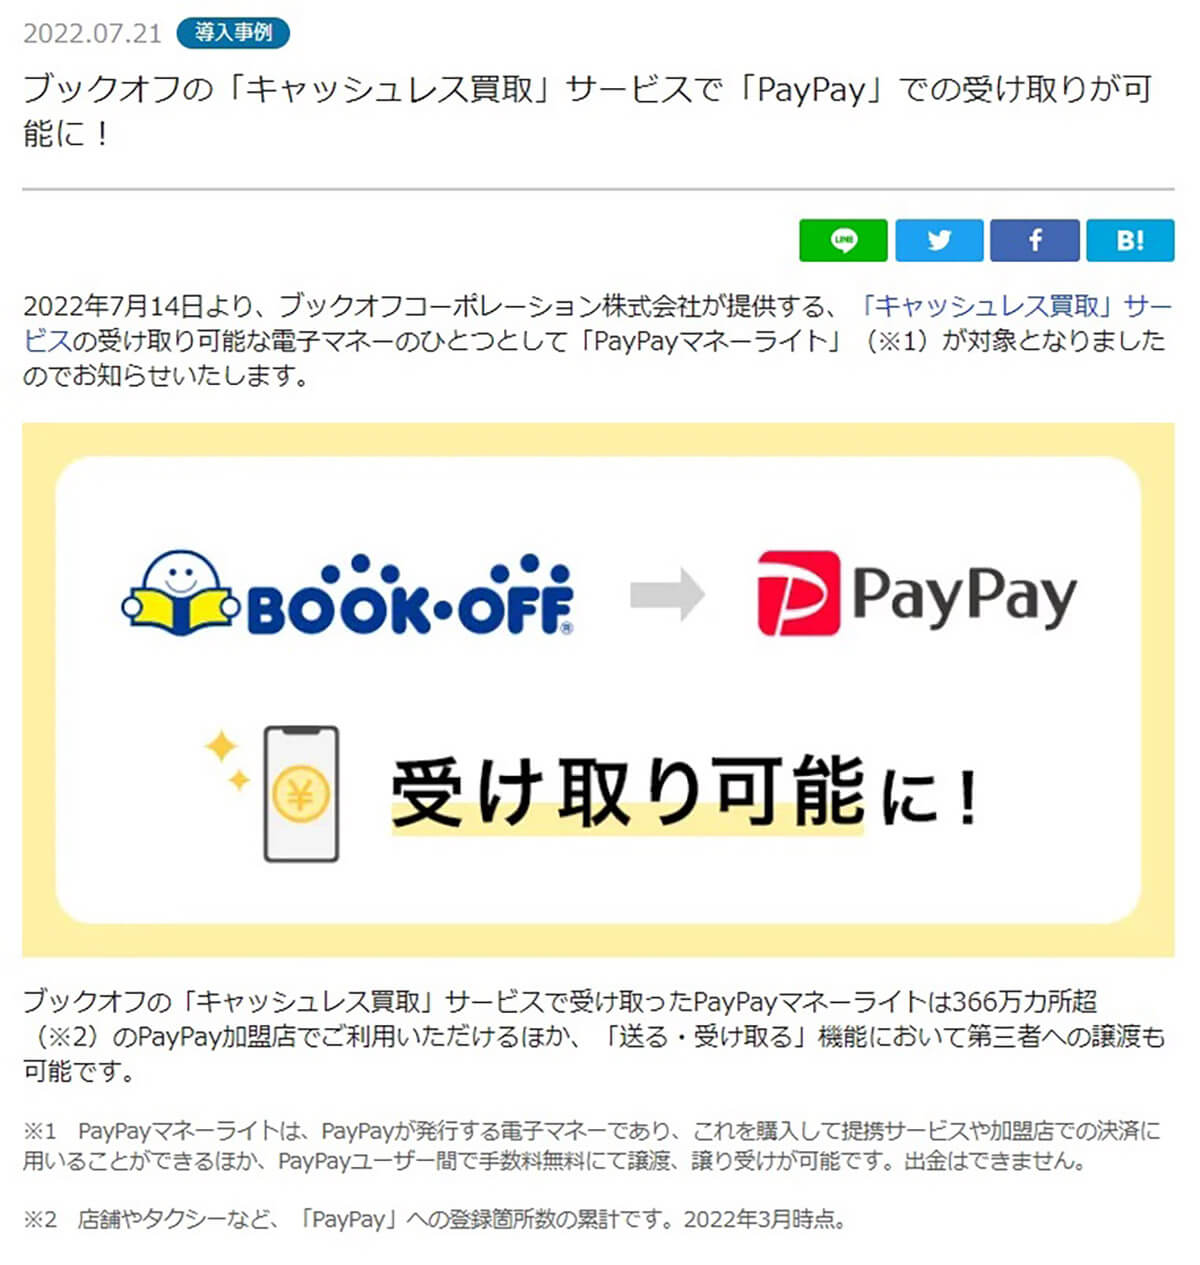 ブックオフの「キャッシュレス買取」サービスで「PayPay」での受け取りが可能に